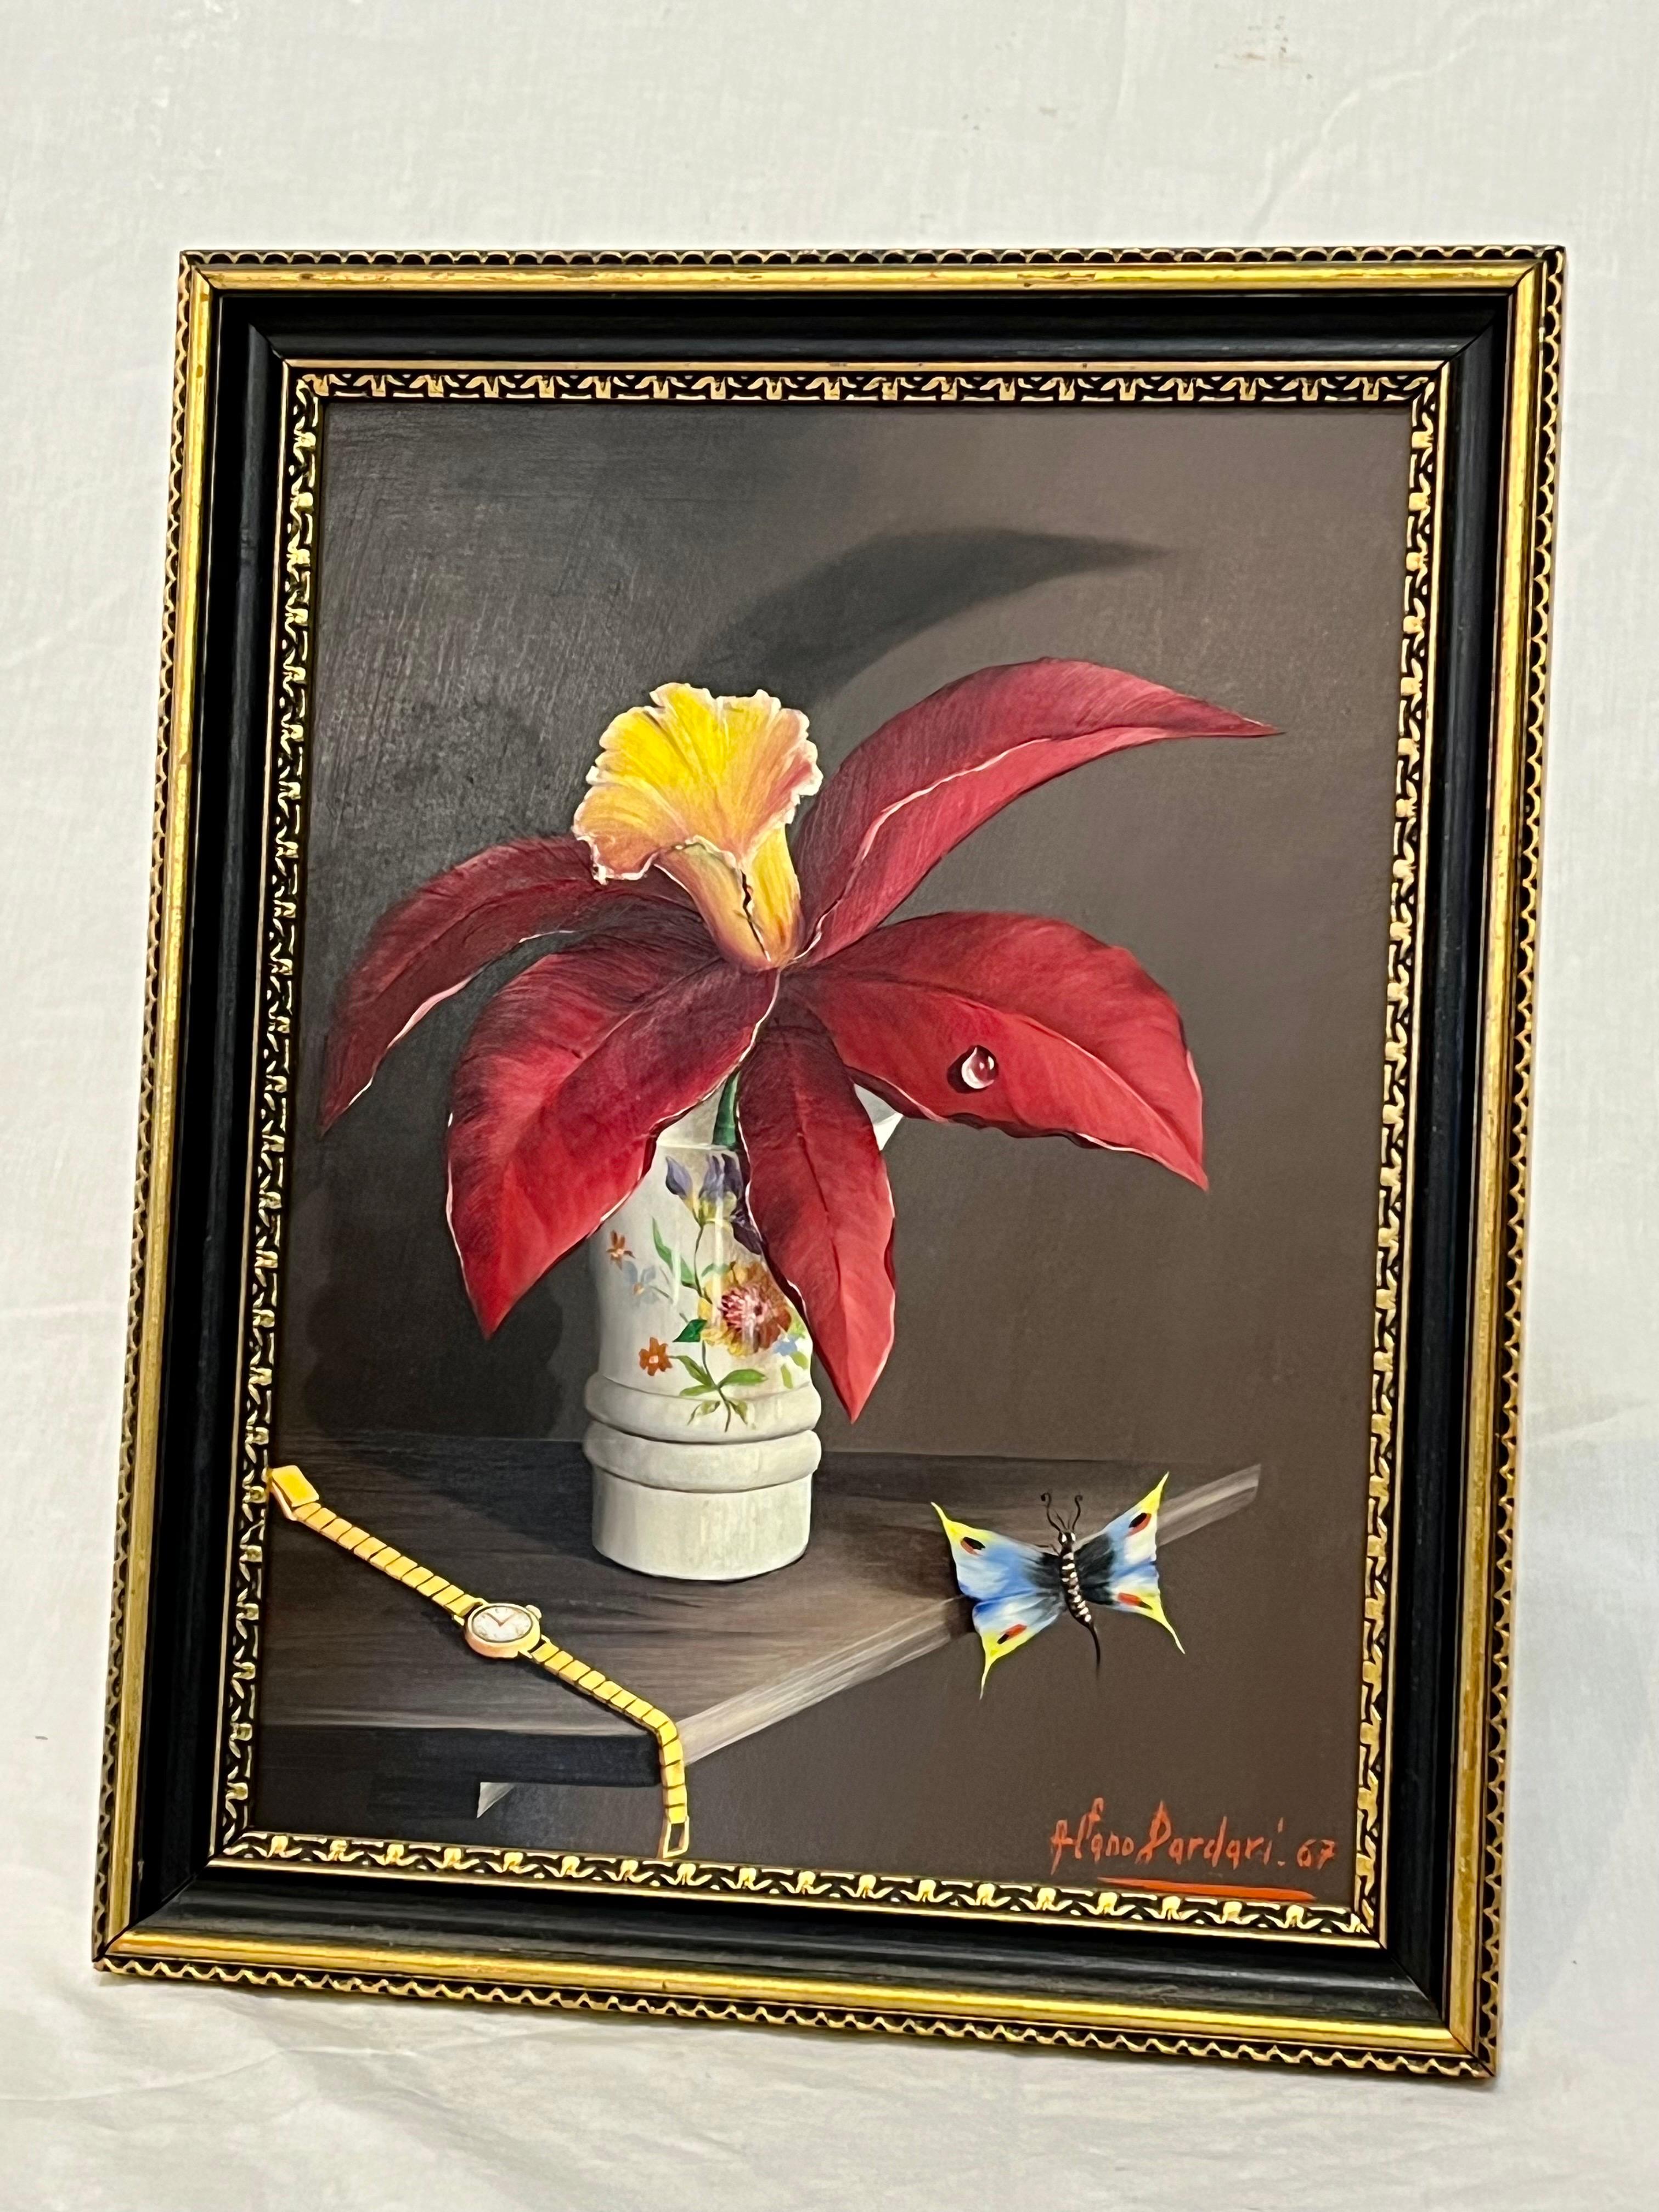 Superbe peinture à l'huile italienne en trompe-l'oeil du milieu du XXe siècle, réalisée par l'artiste Alfano Dardari. Cette œuvre représente une belle fleur dans un vase avec une parfaite petite goutte d'eau reposant délicatement sur un pétale. La